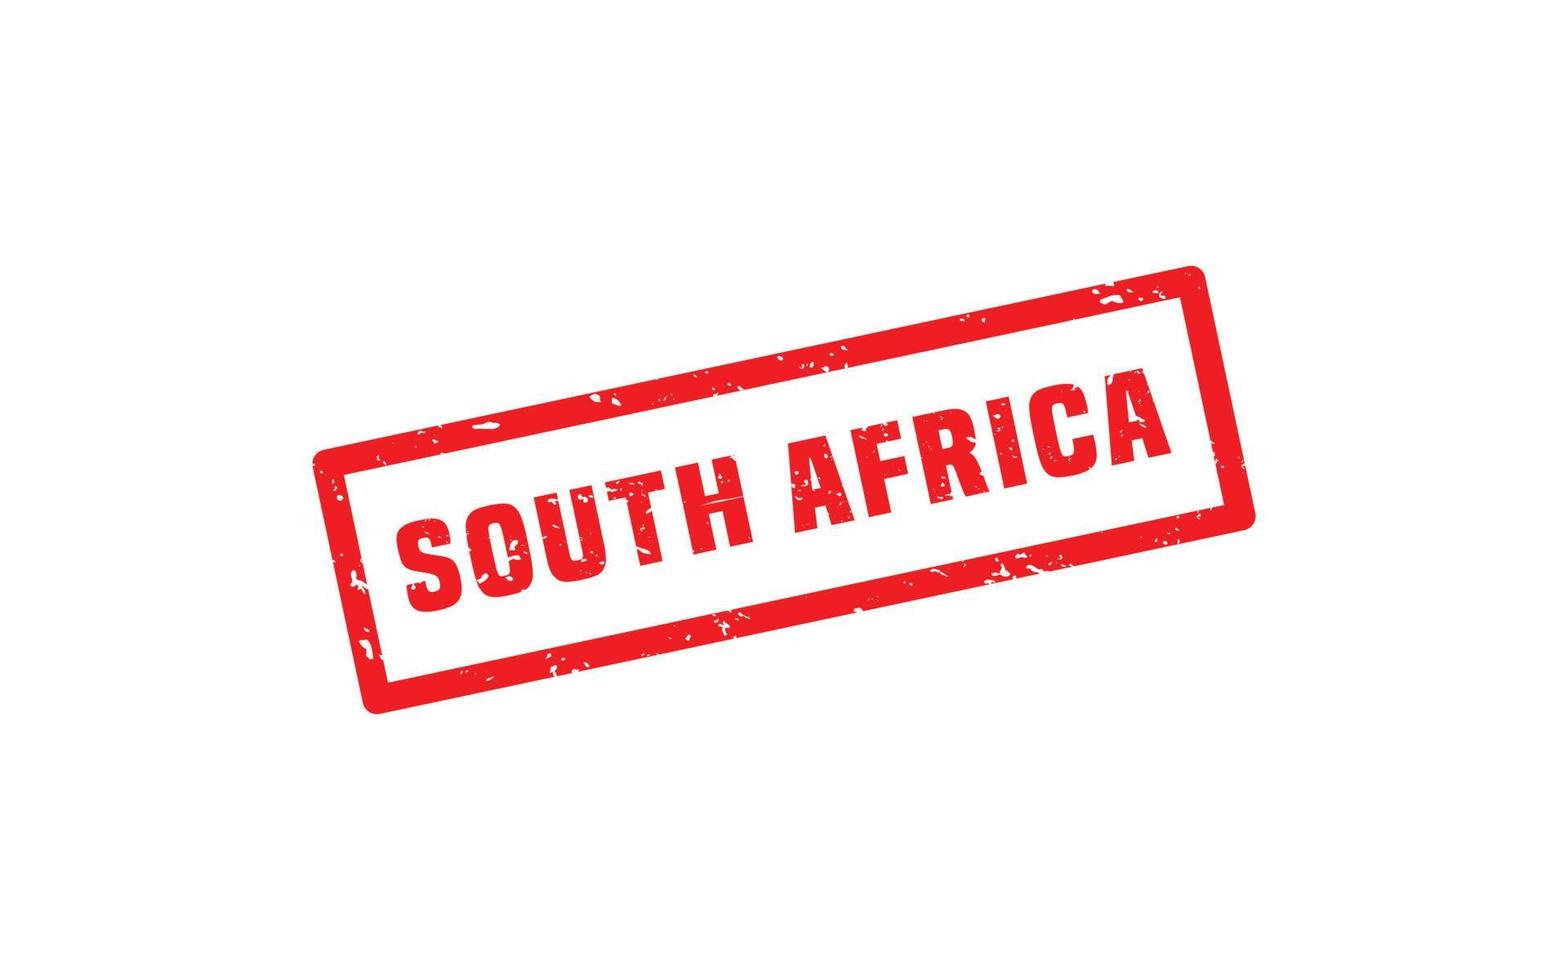 goma de sello de Sudáfrica con estilo grunge sobre fondo blanco vector